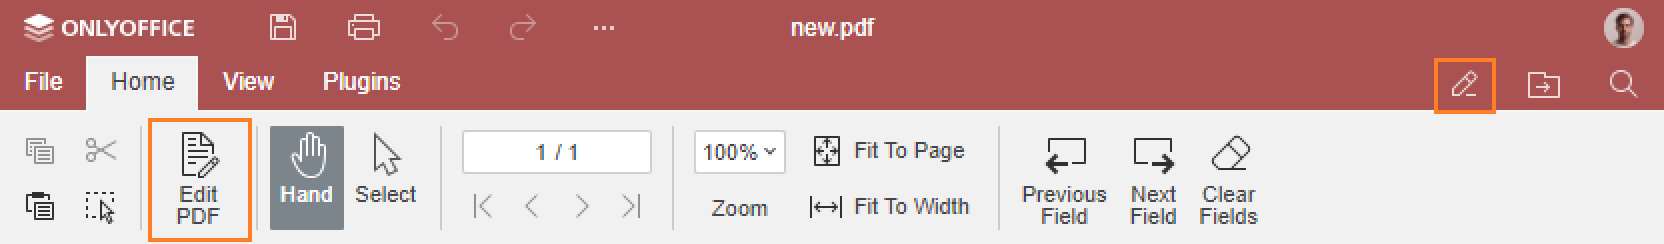 Edit PDF button